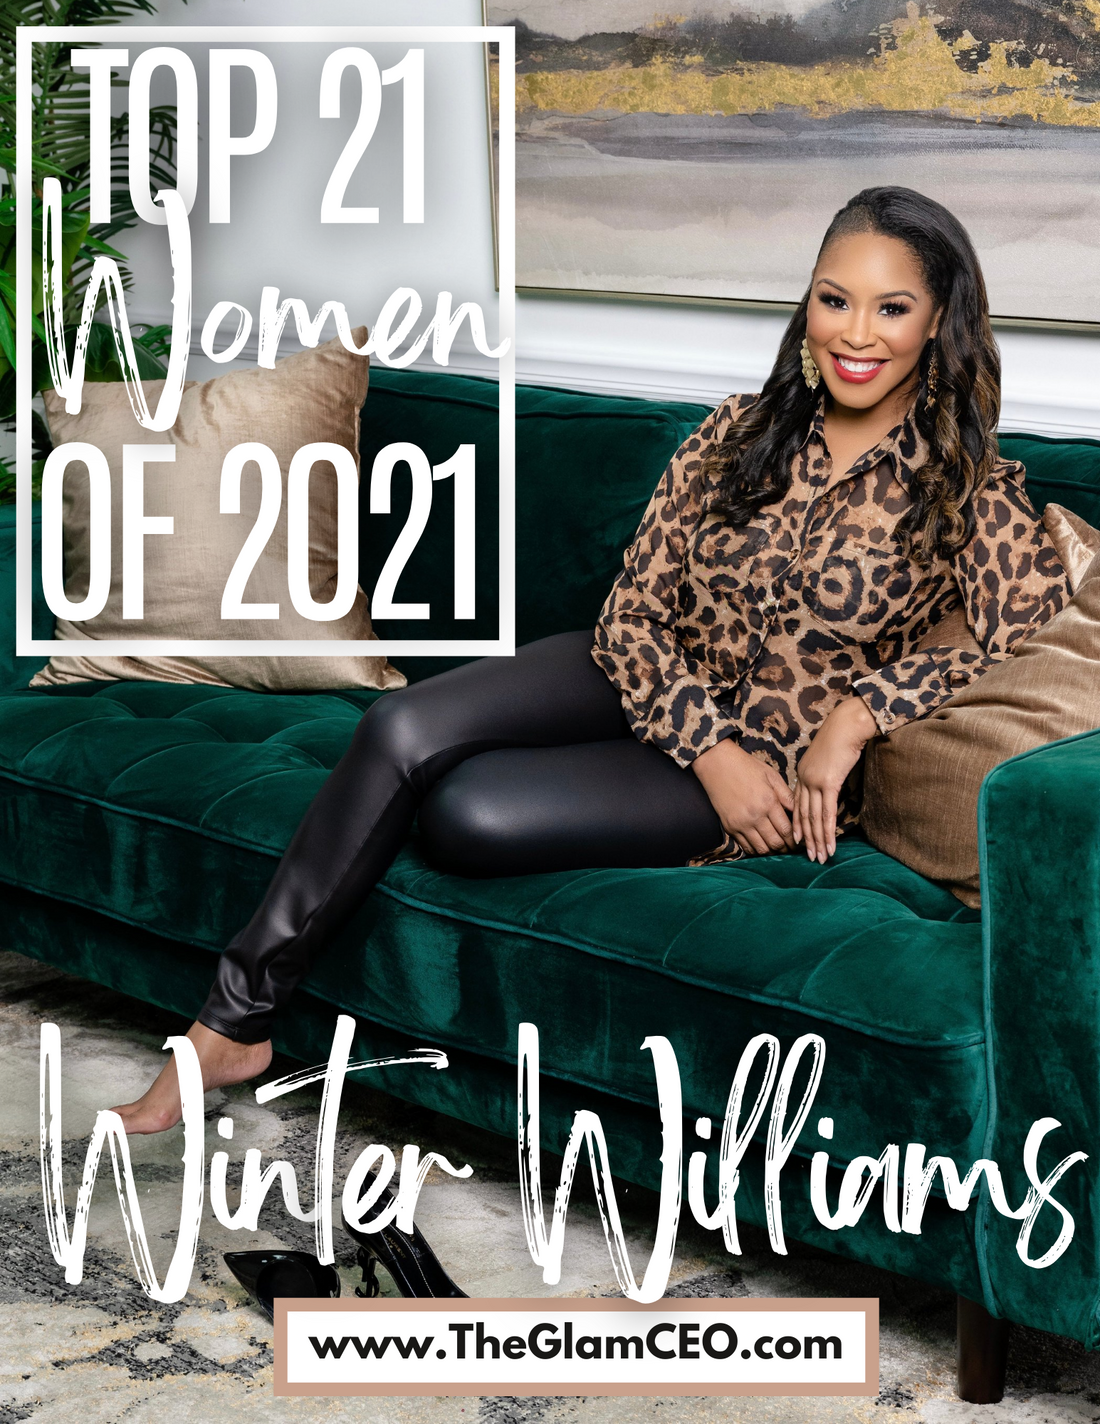 Top 21 Women of 2021: Winter Williams